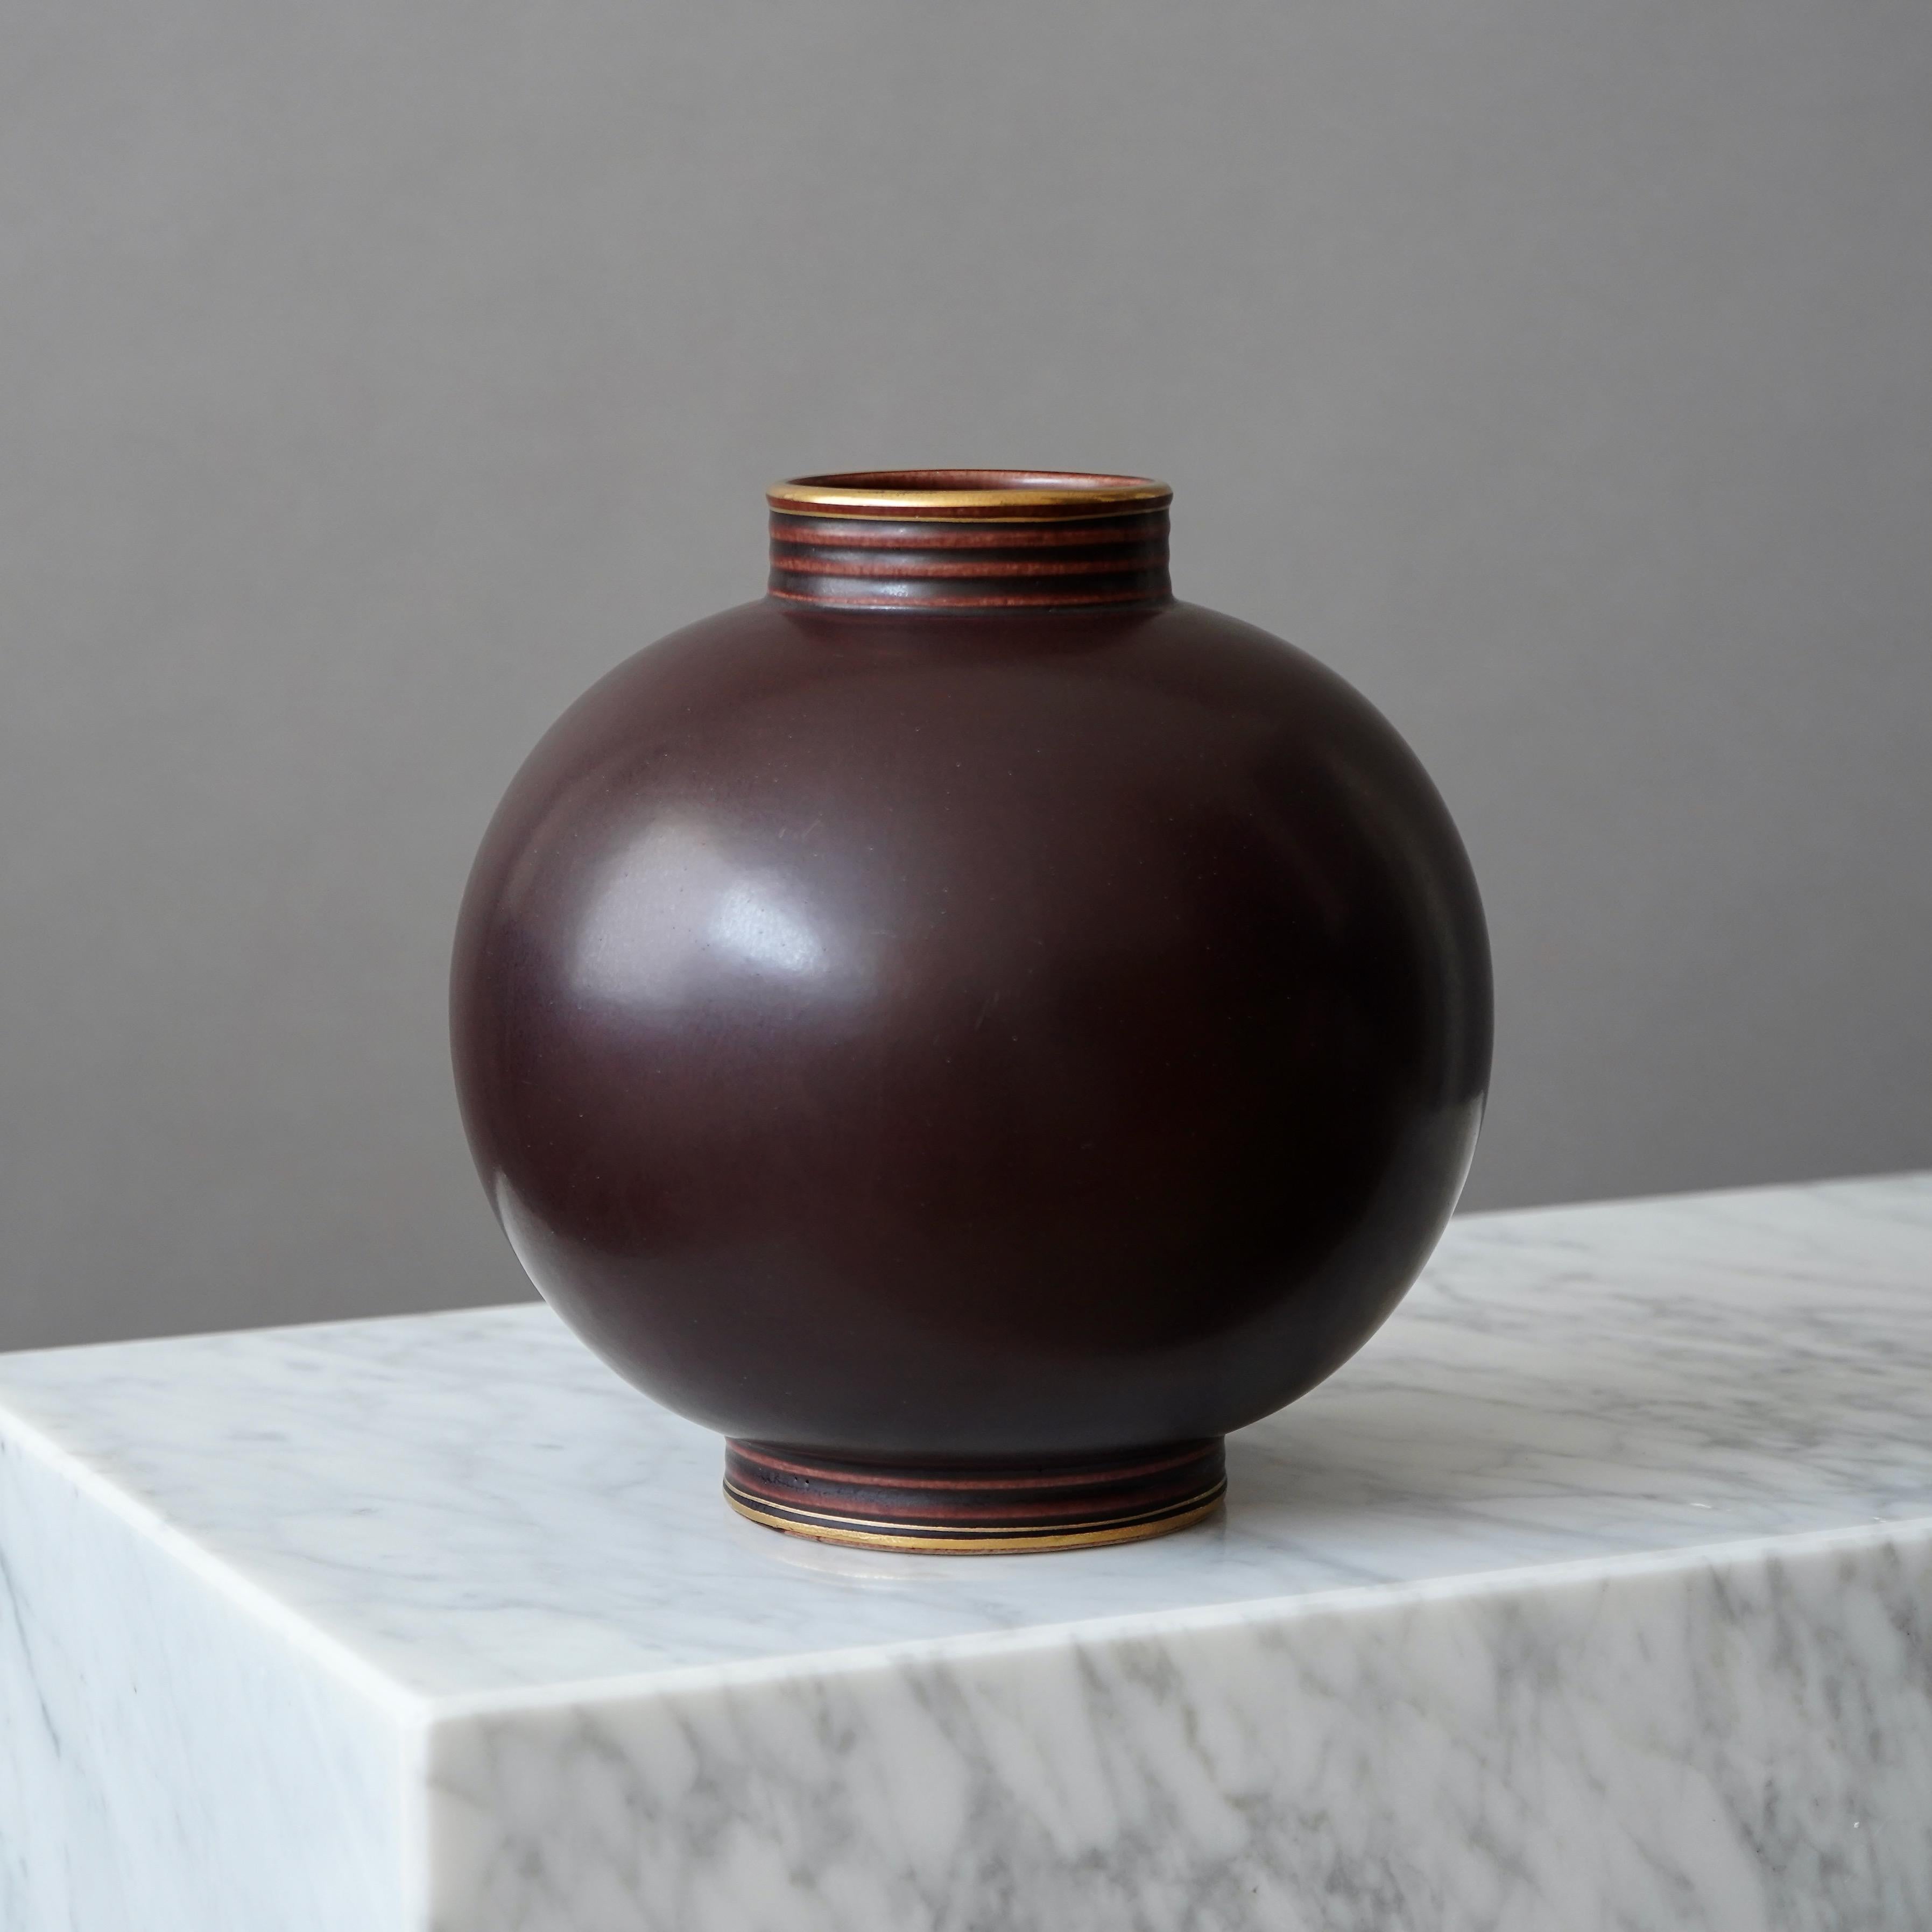 Eine schöne Vase aus Steingut mit toller Glasur. 
Entworfen von Gunnar Nylund für Rorstrand, Schweden, 1930er Jahre.  

Toller Zustand. In Gold gestempelt 